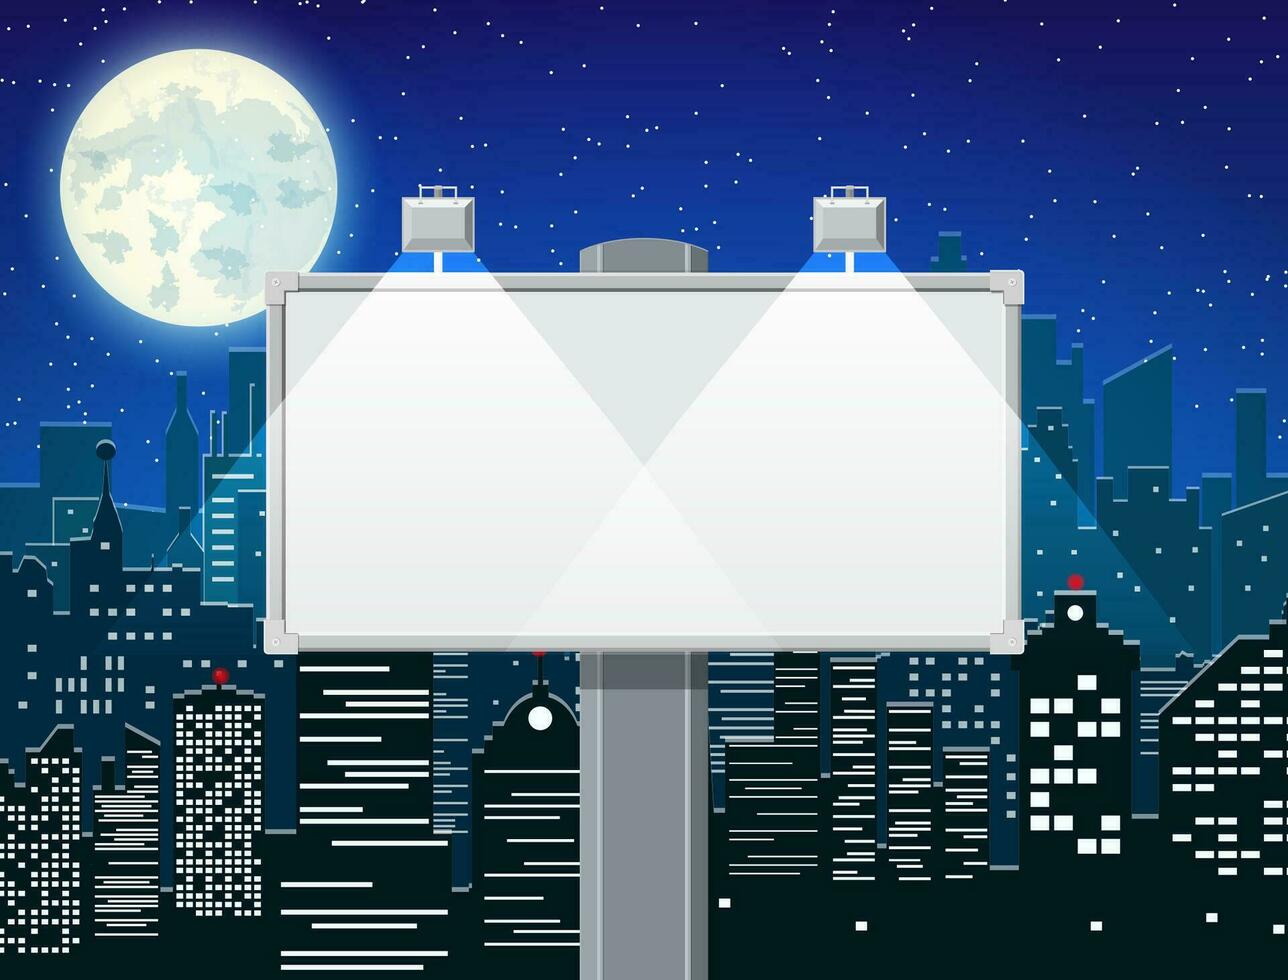 leeg stedelijk groot bord of aanplakbord met lamp. blanco model. afzet en advertentie. nacht stadsgezicht achtergrond met gebouwen, lucht, sterren, maan. vector illustratie in vlak stijl